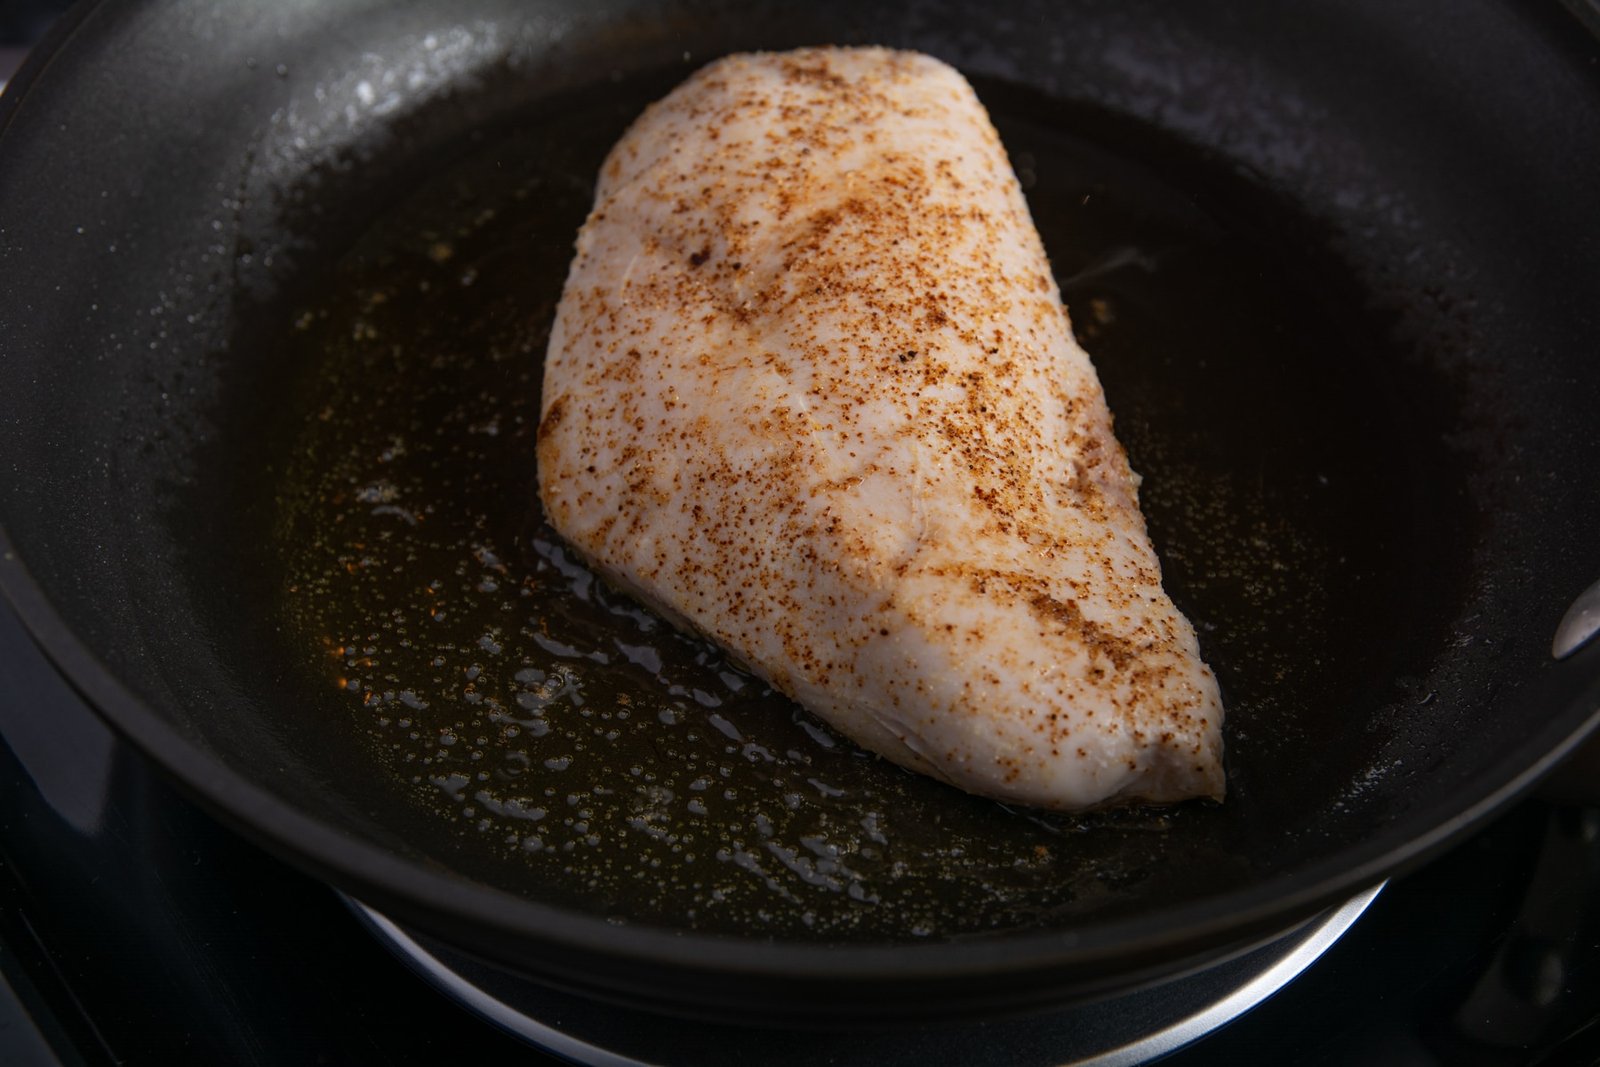 Raw seasoned chicken in a pan.